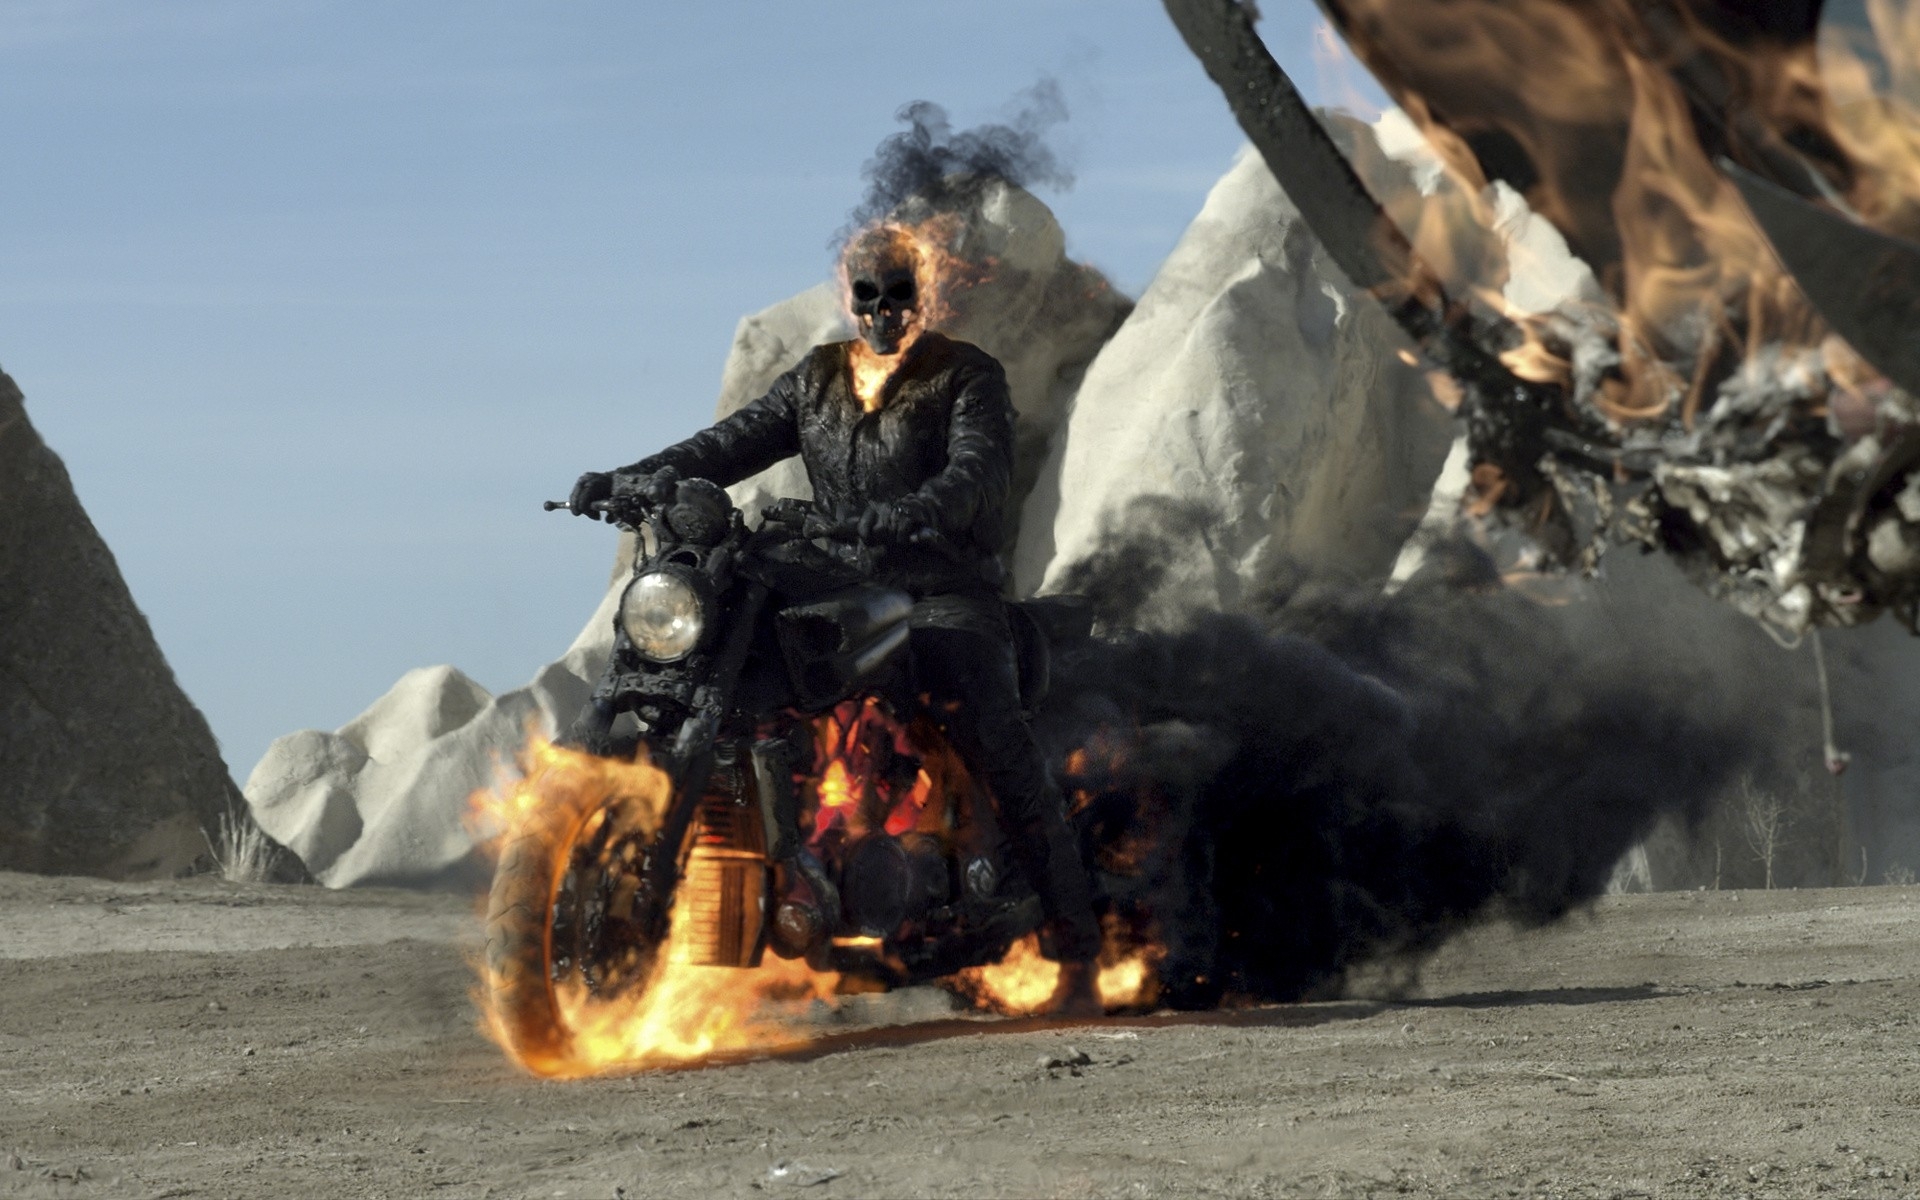 Motoqueiro Fantasma* - O motociclista mais famoso do mundo. No enredo da  história, Johnny Blaze, o Motoqueiro Fantasma, trabalha fazendo show de  motociclismo em um circo antes de fazer um acordo com